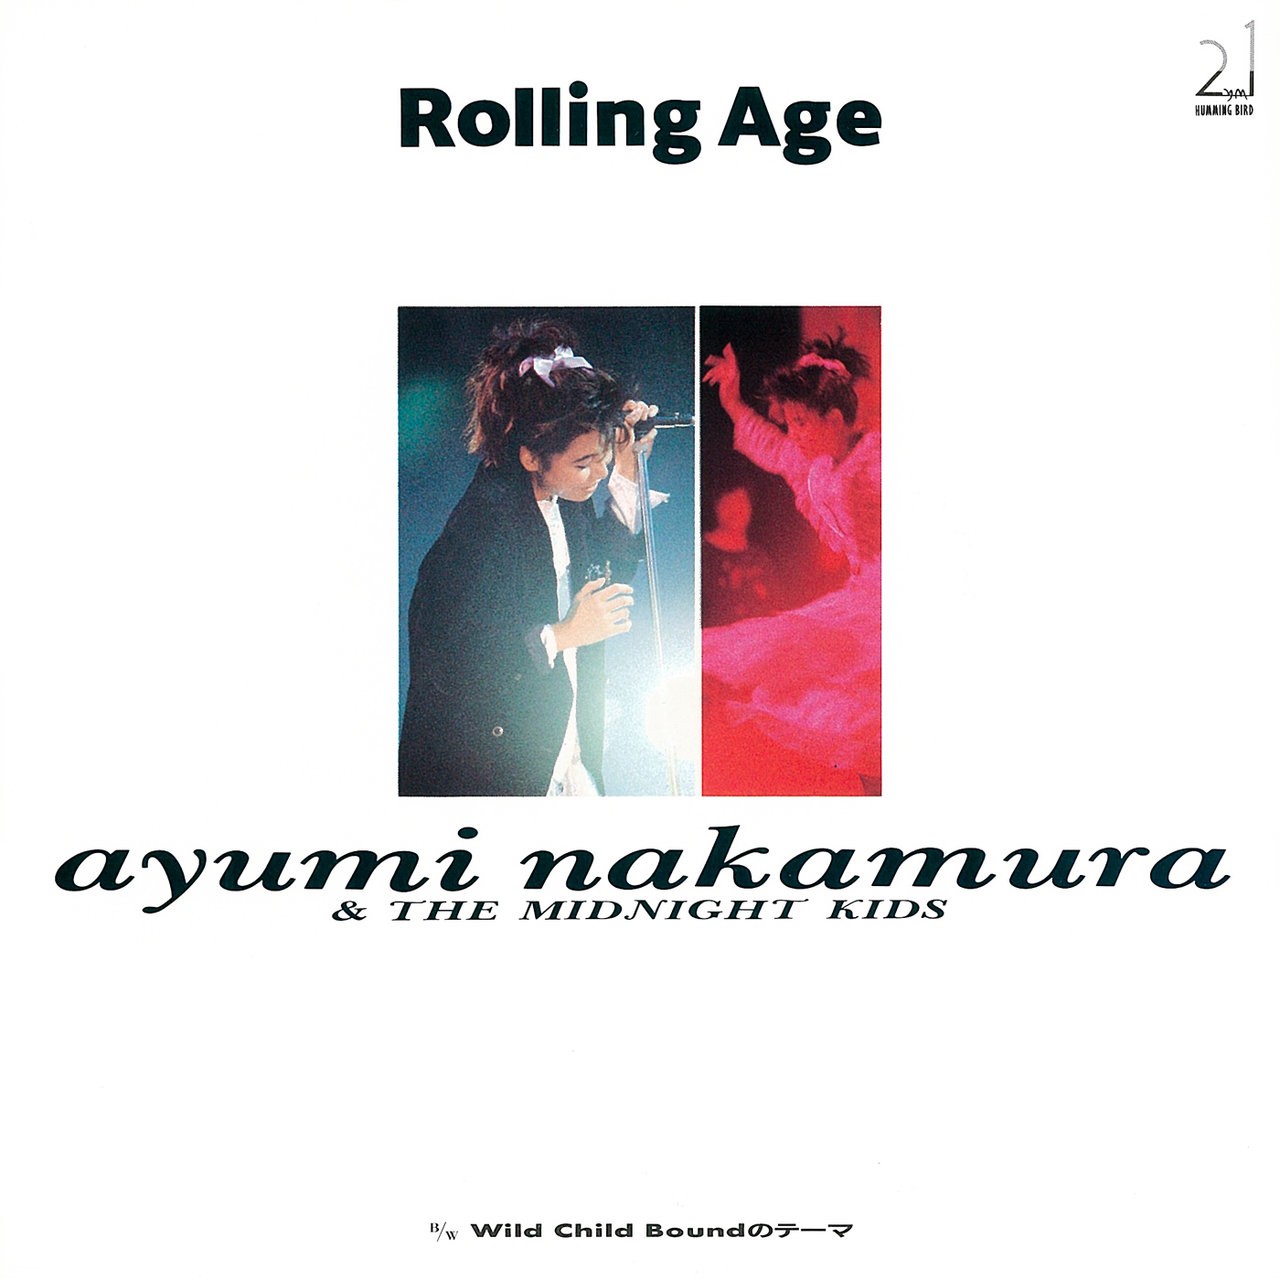 Ayumi Nakamura (中村あゆみ) - Rolling Age ⁄ Wild Child Boundのテーマ (2019 Remastered) (1987/2019) [FLAC 24bit/48kHz]